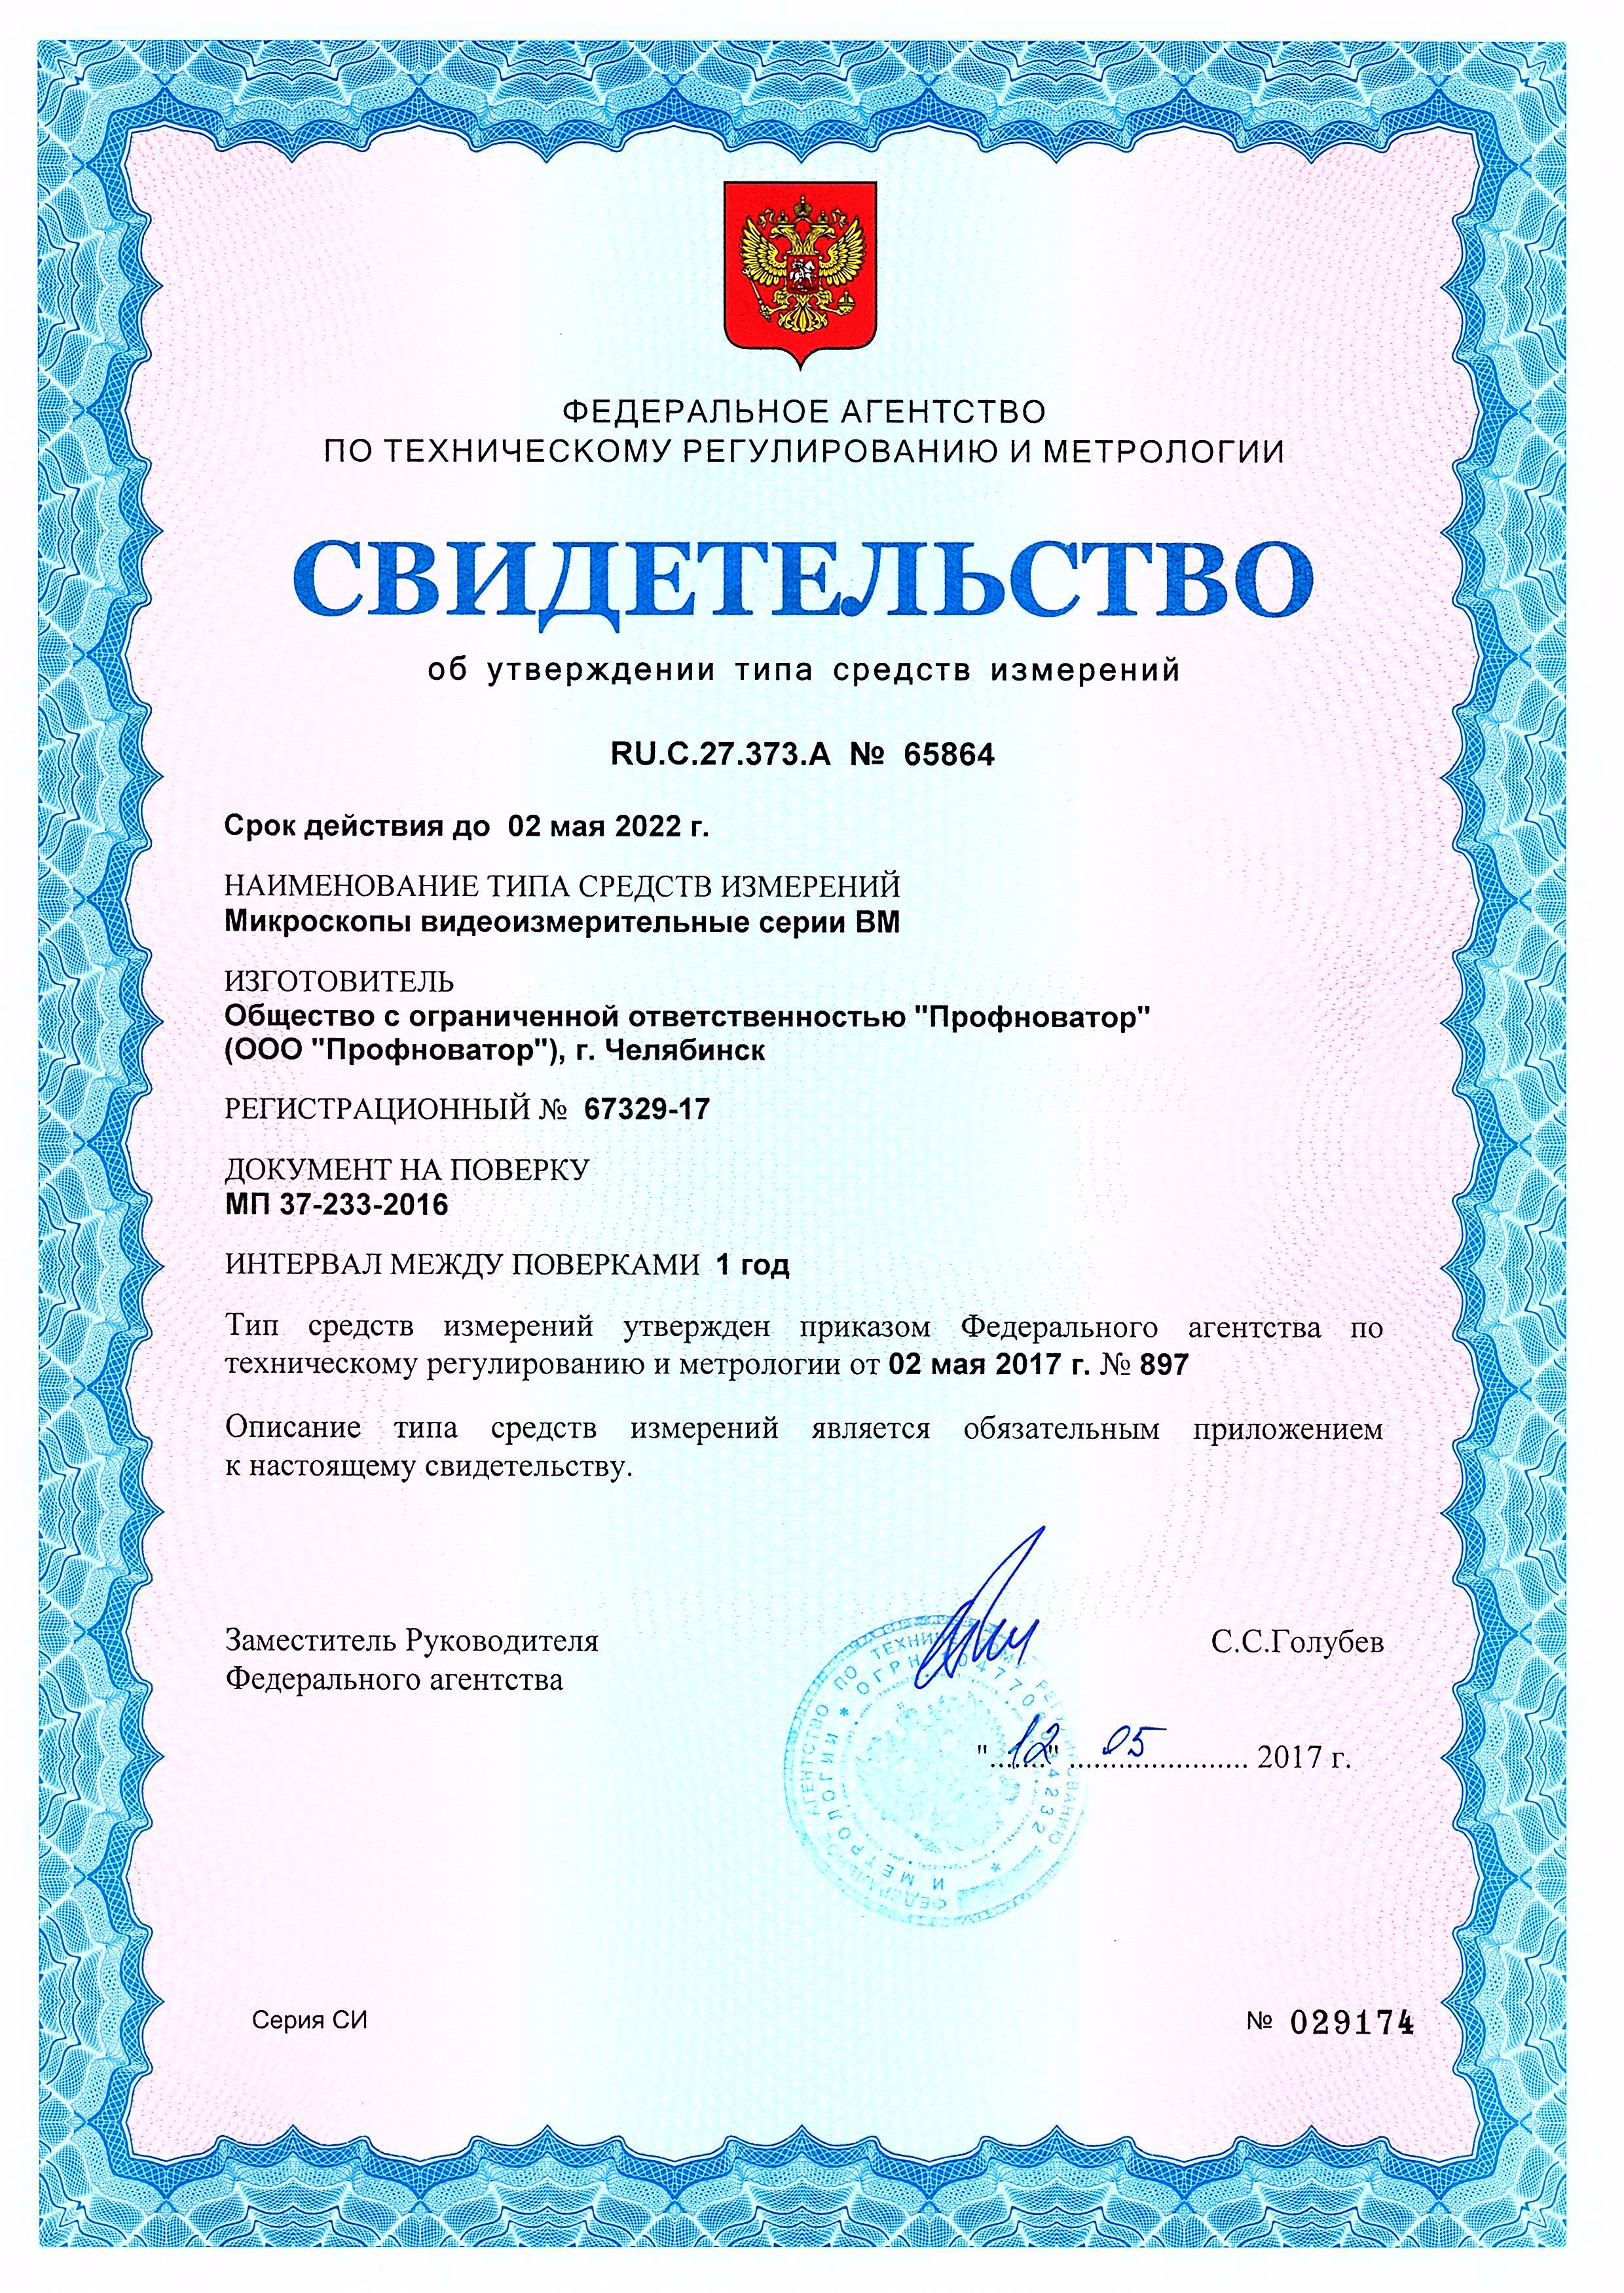 Сертификат Профноватор